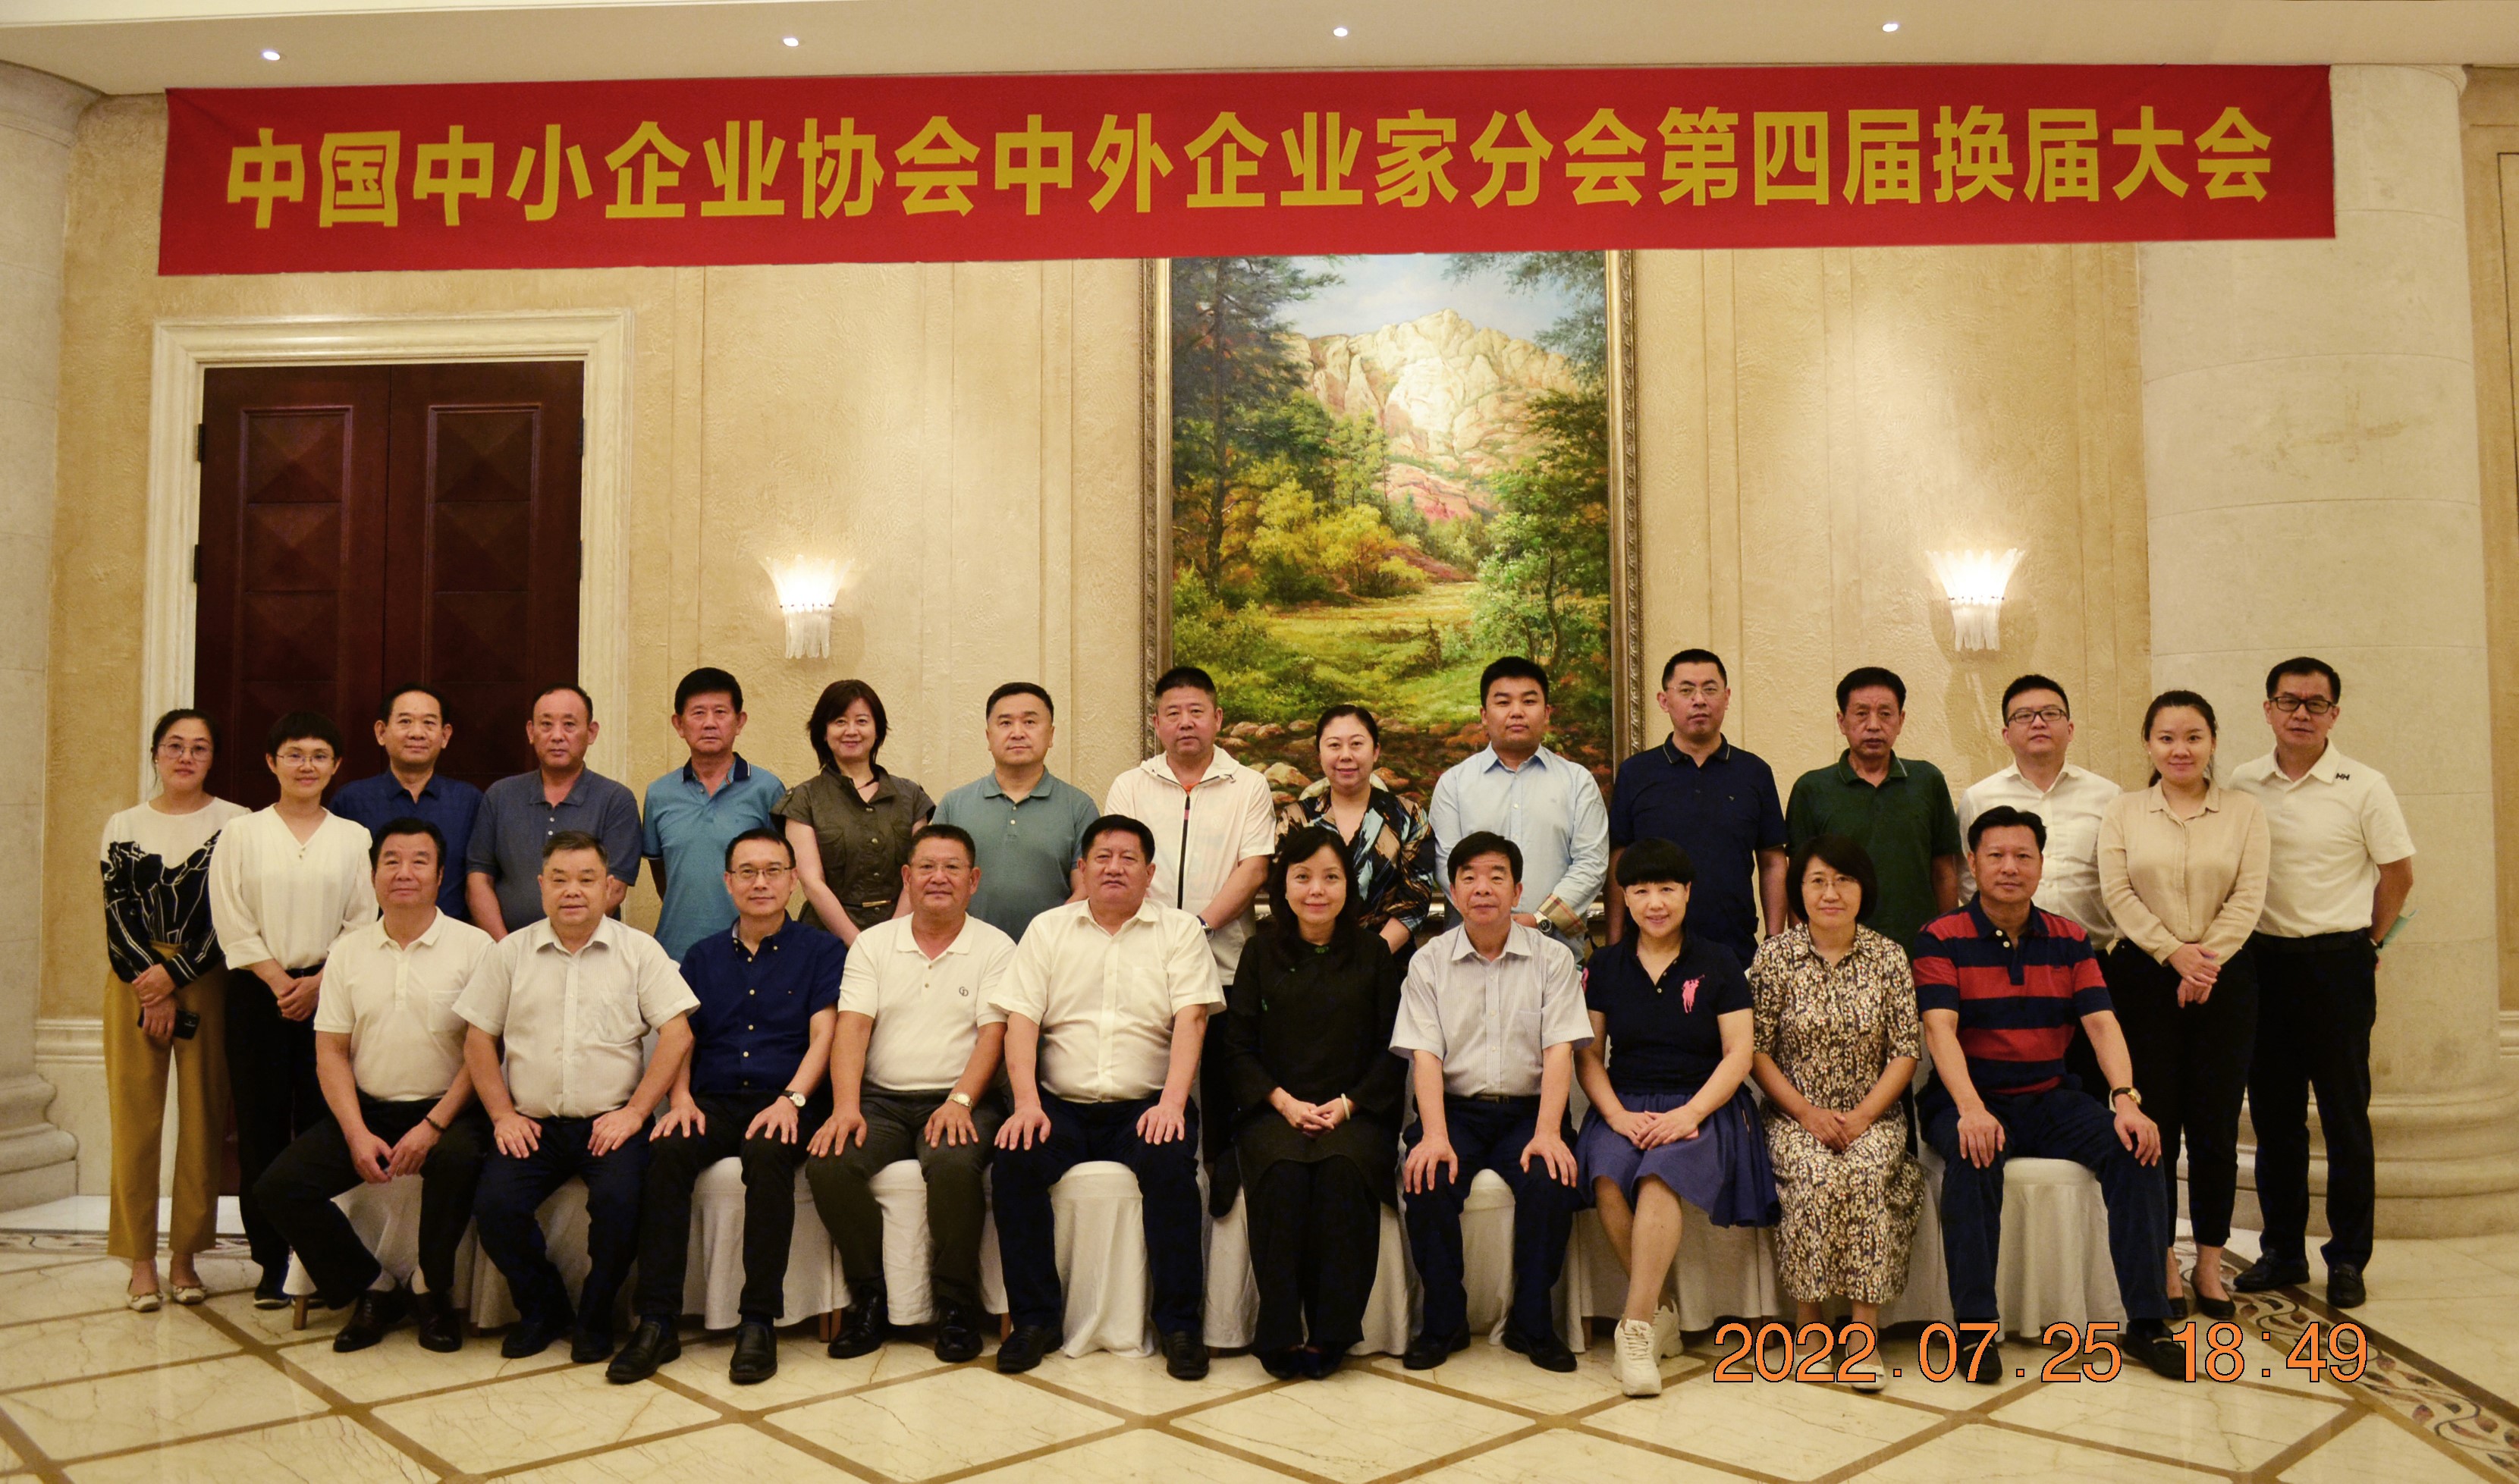 中国中小企业协会中外企业家分会第四届换届大会在哈尔滨成功召开